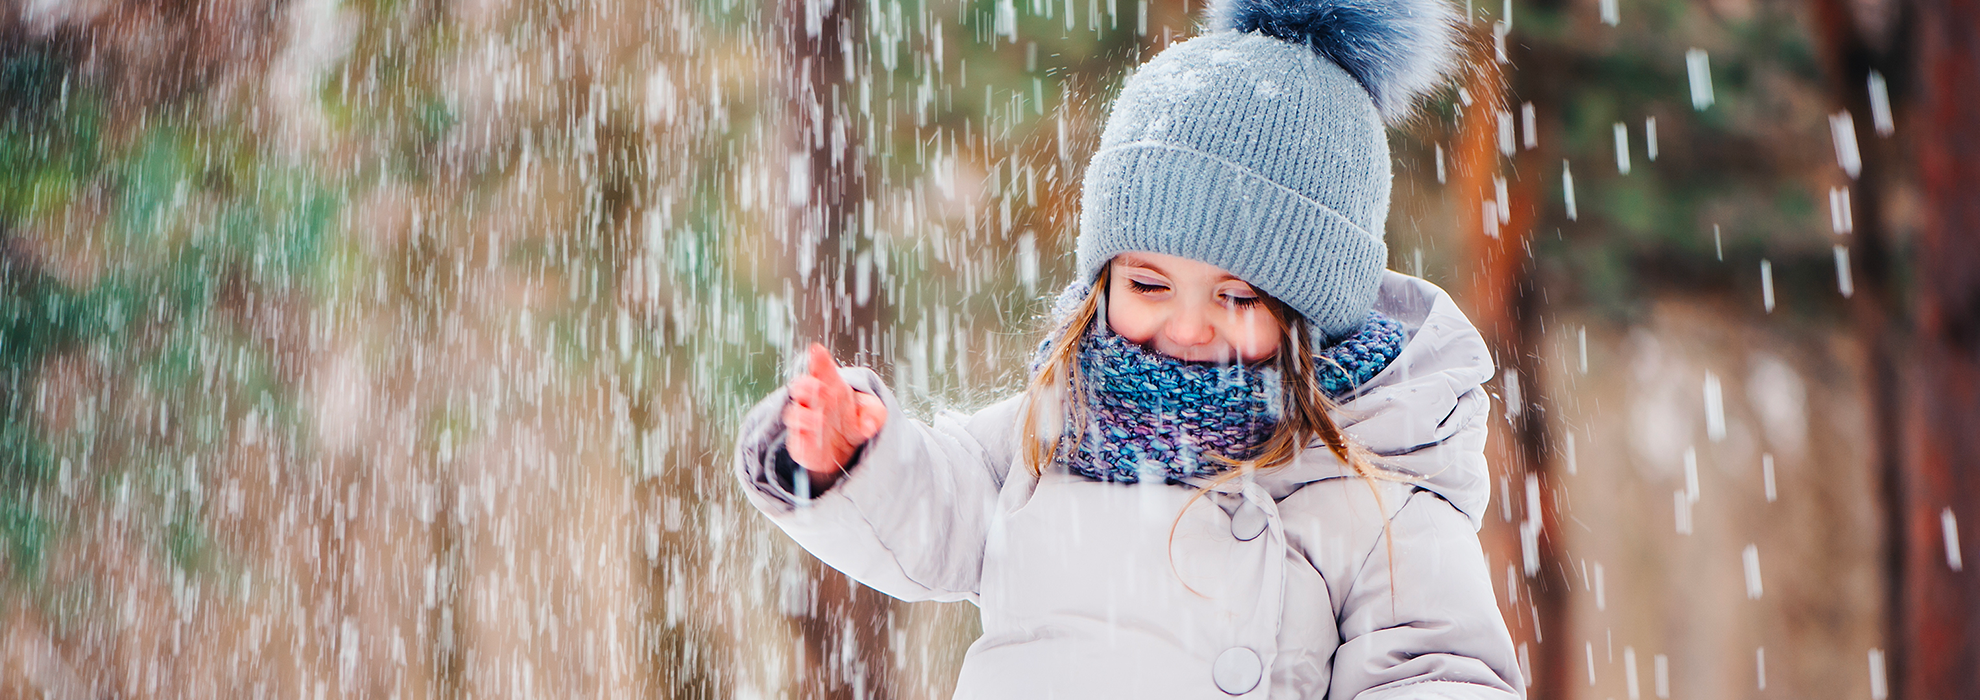 Cappelli e sciarpe: come proteggere i bambini dal freddo